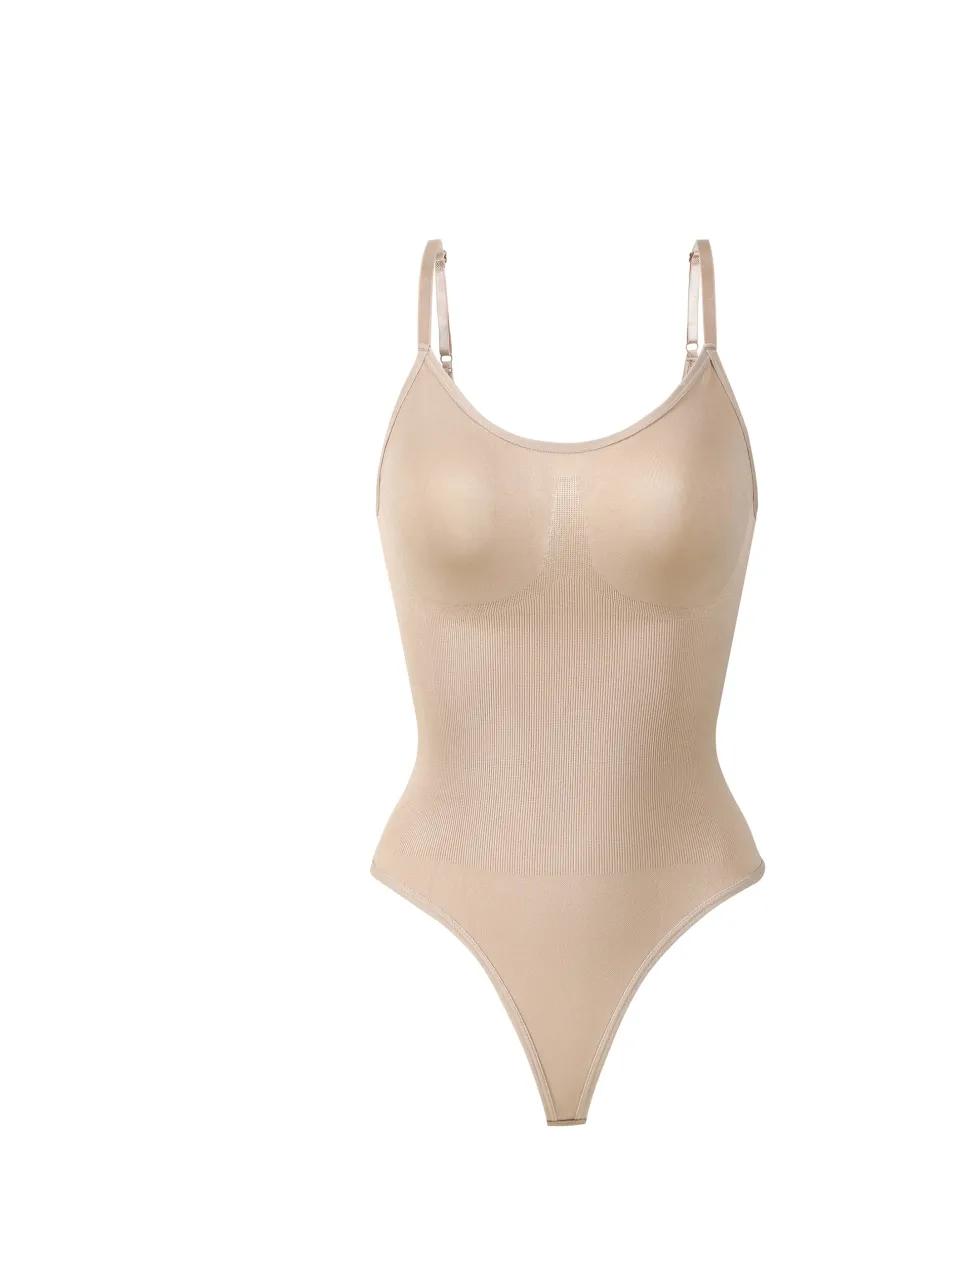 Bezszwowe Body modelujące damskie modelujące ciało na brzuch Fajas Colombianas gorset Waist Trainer damskie seksowne stringi bielizna wyszczuplająca